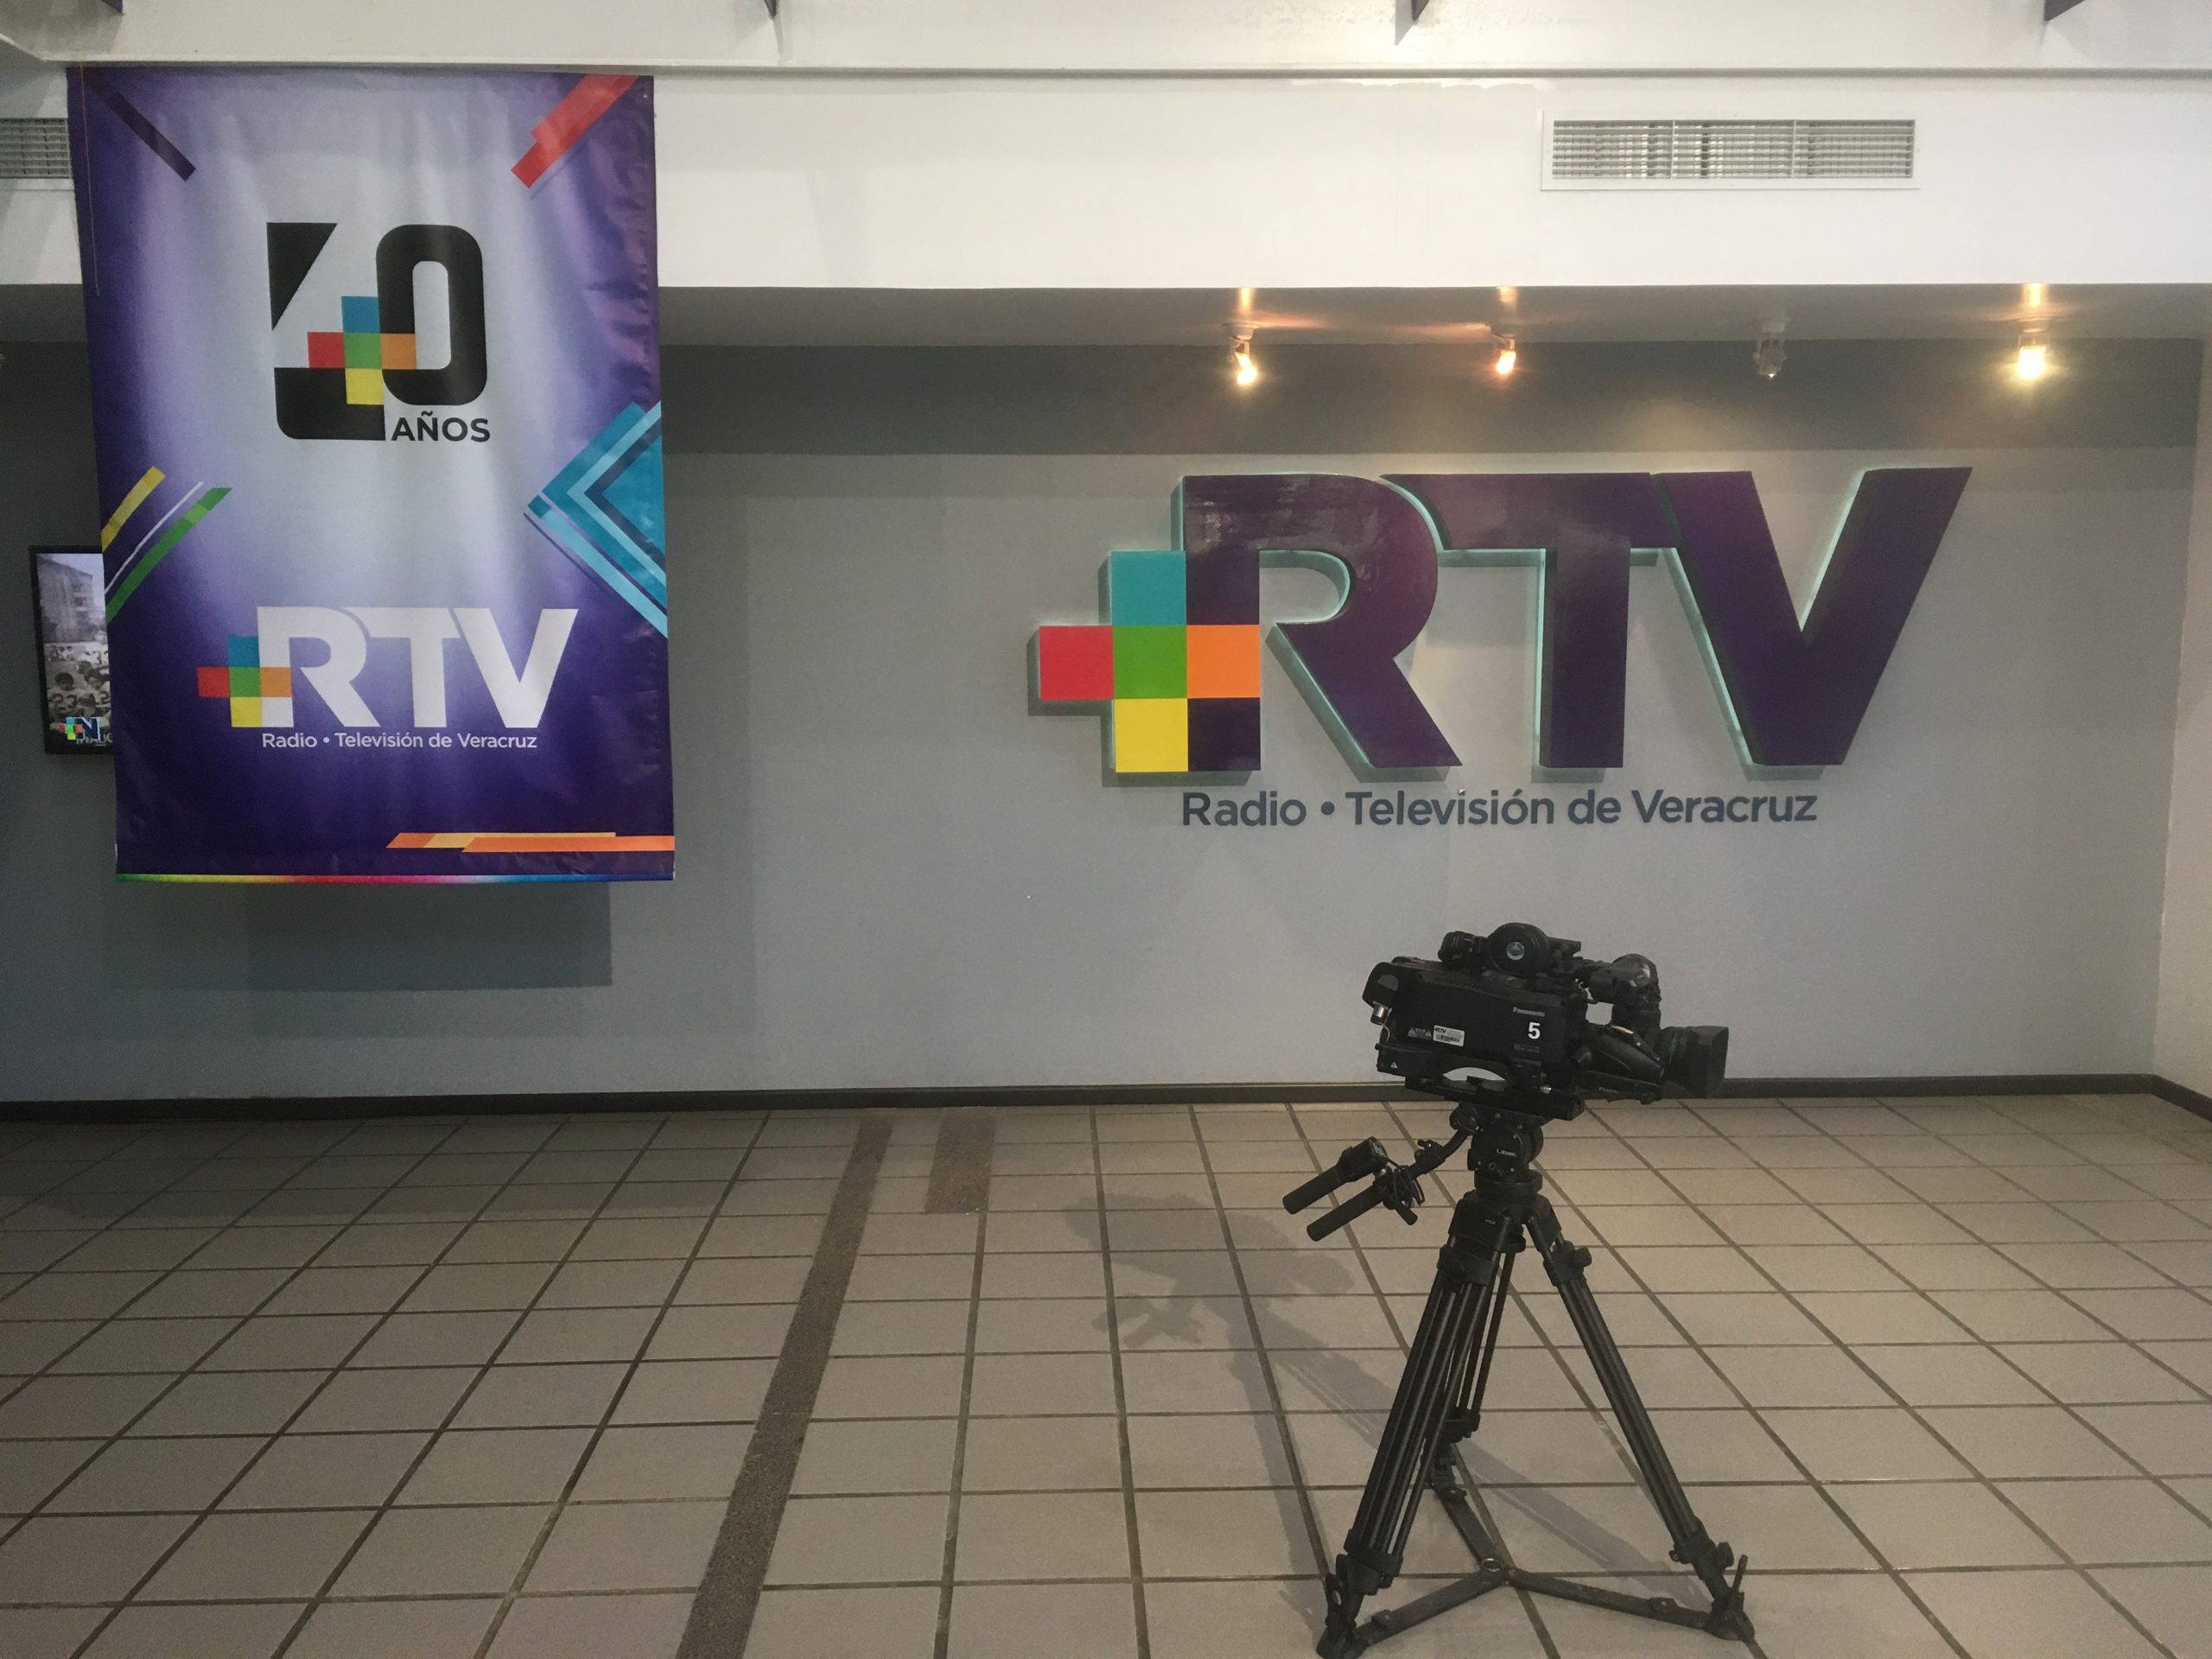 40 aniversario de RTV